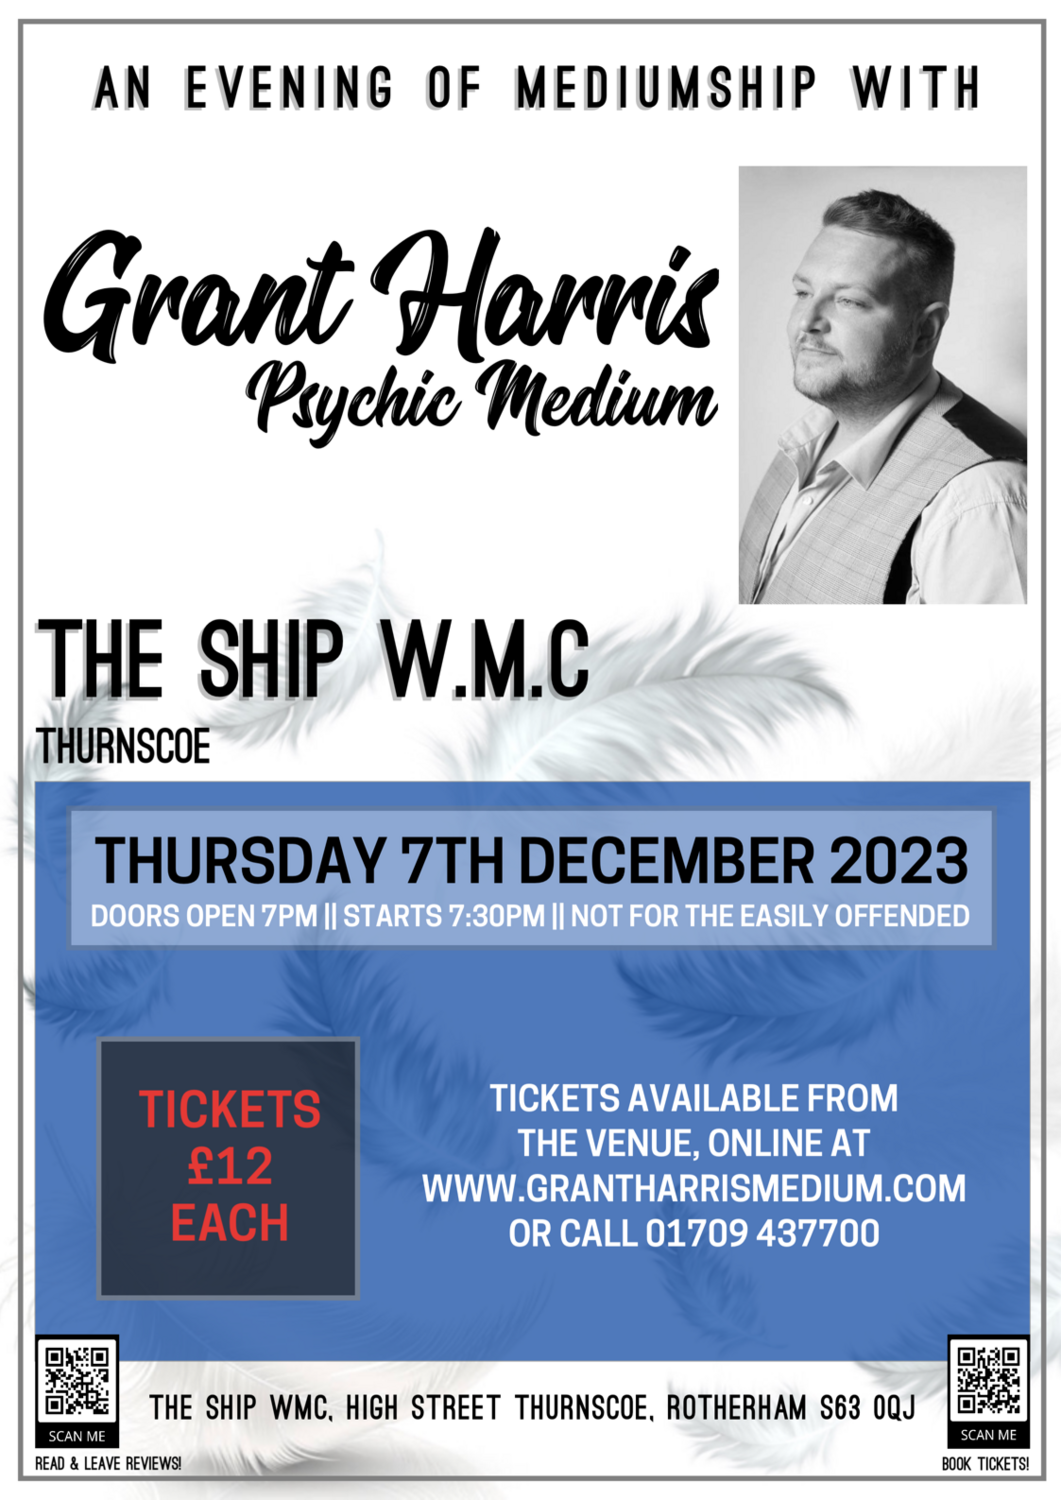 The Ship WMC, Thurnscoe, Thursday 7th December 2023